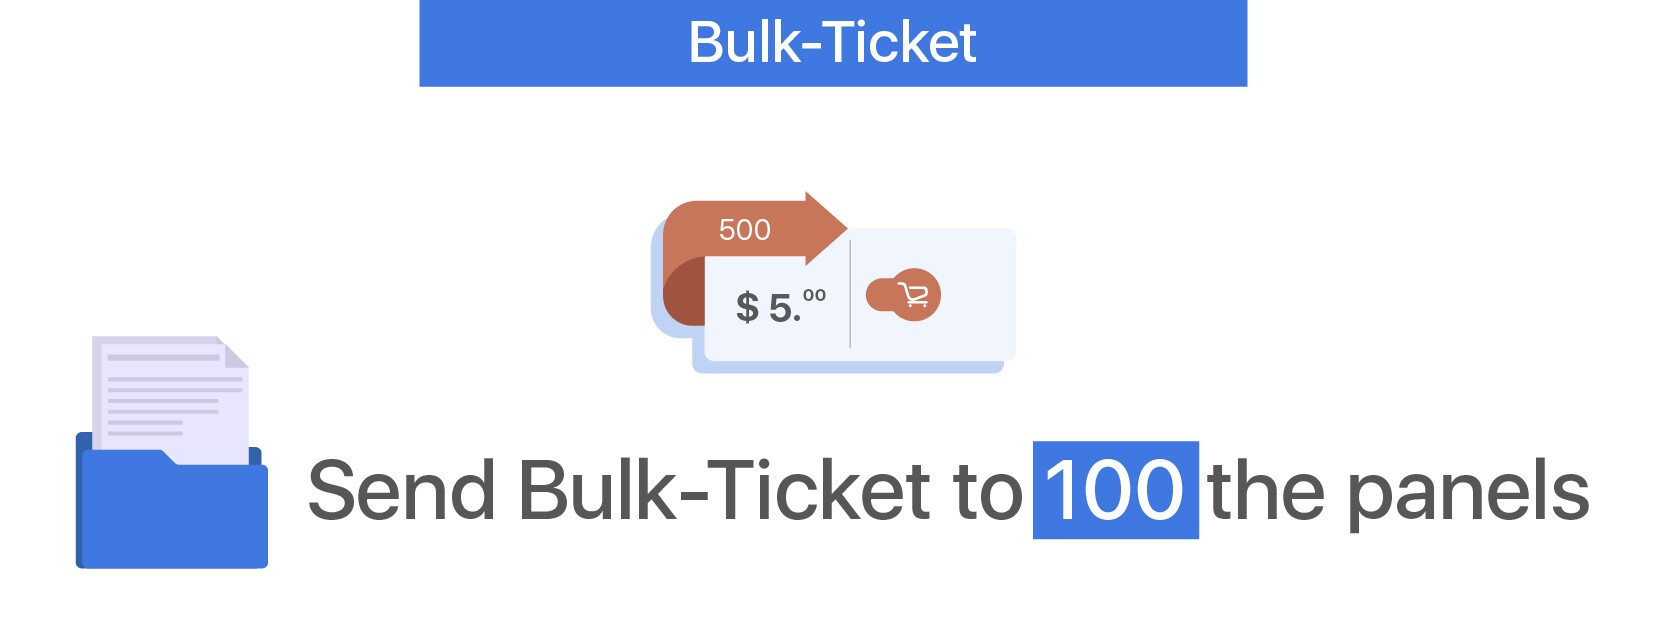 Bulk-Ticket - 100 Panels